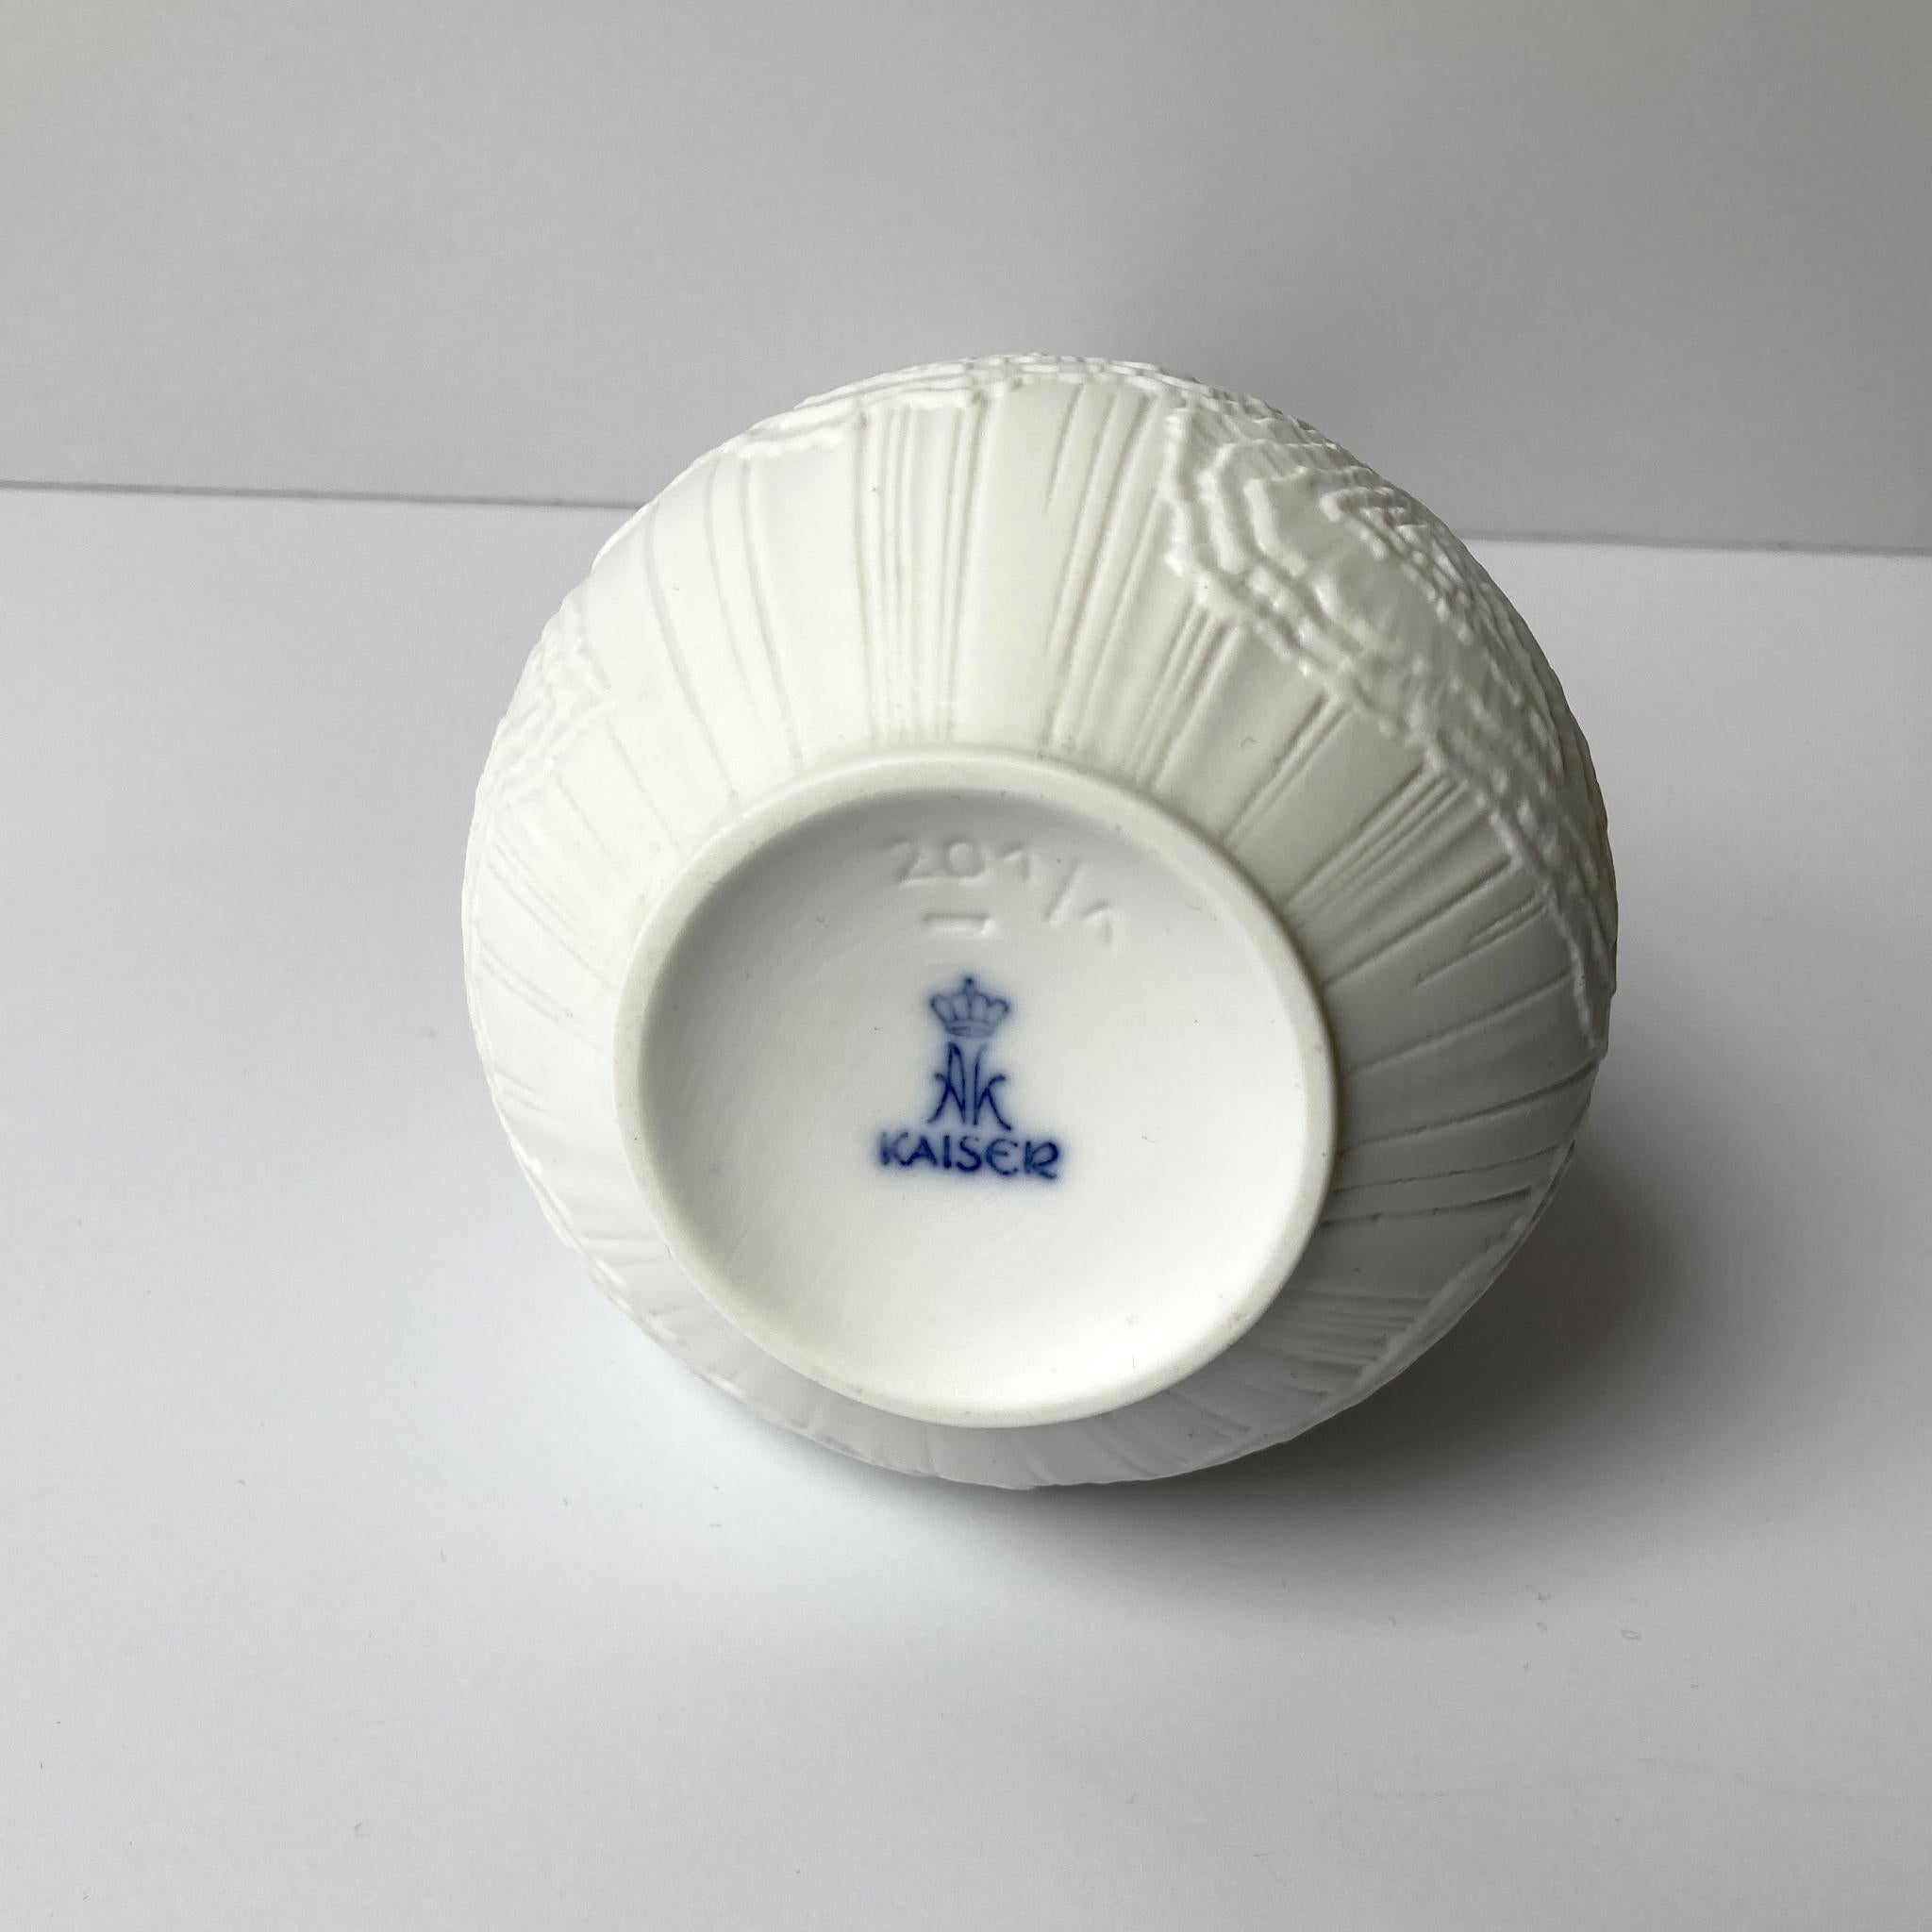 Céramique AK Kaiser vase biscuit blanc texturé, années 1970 en vente